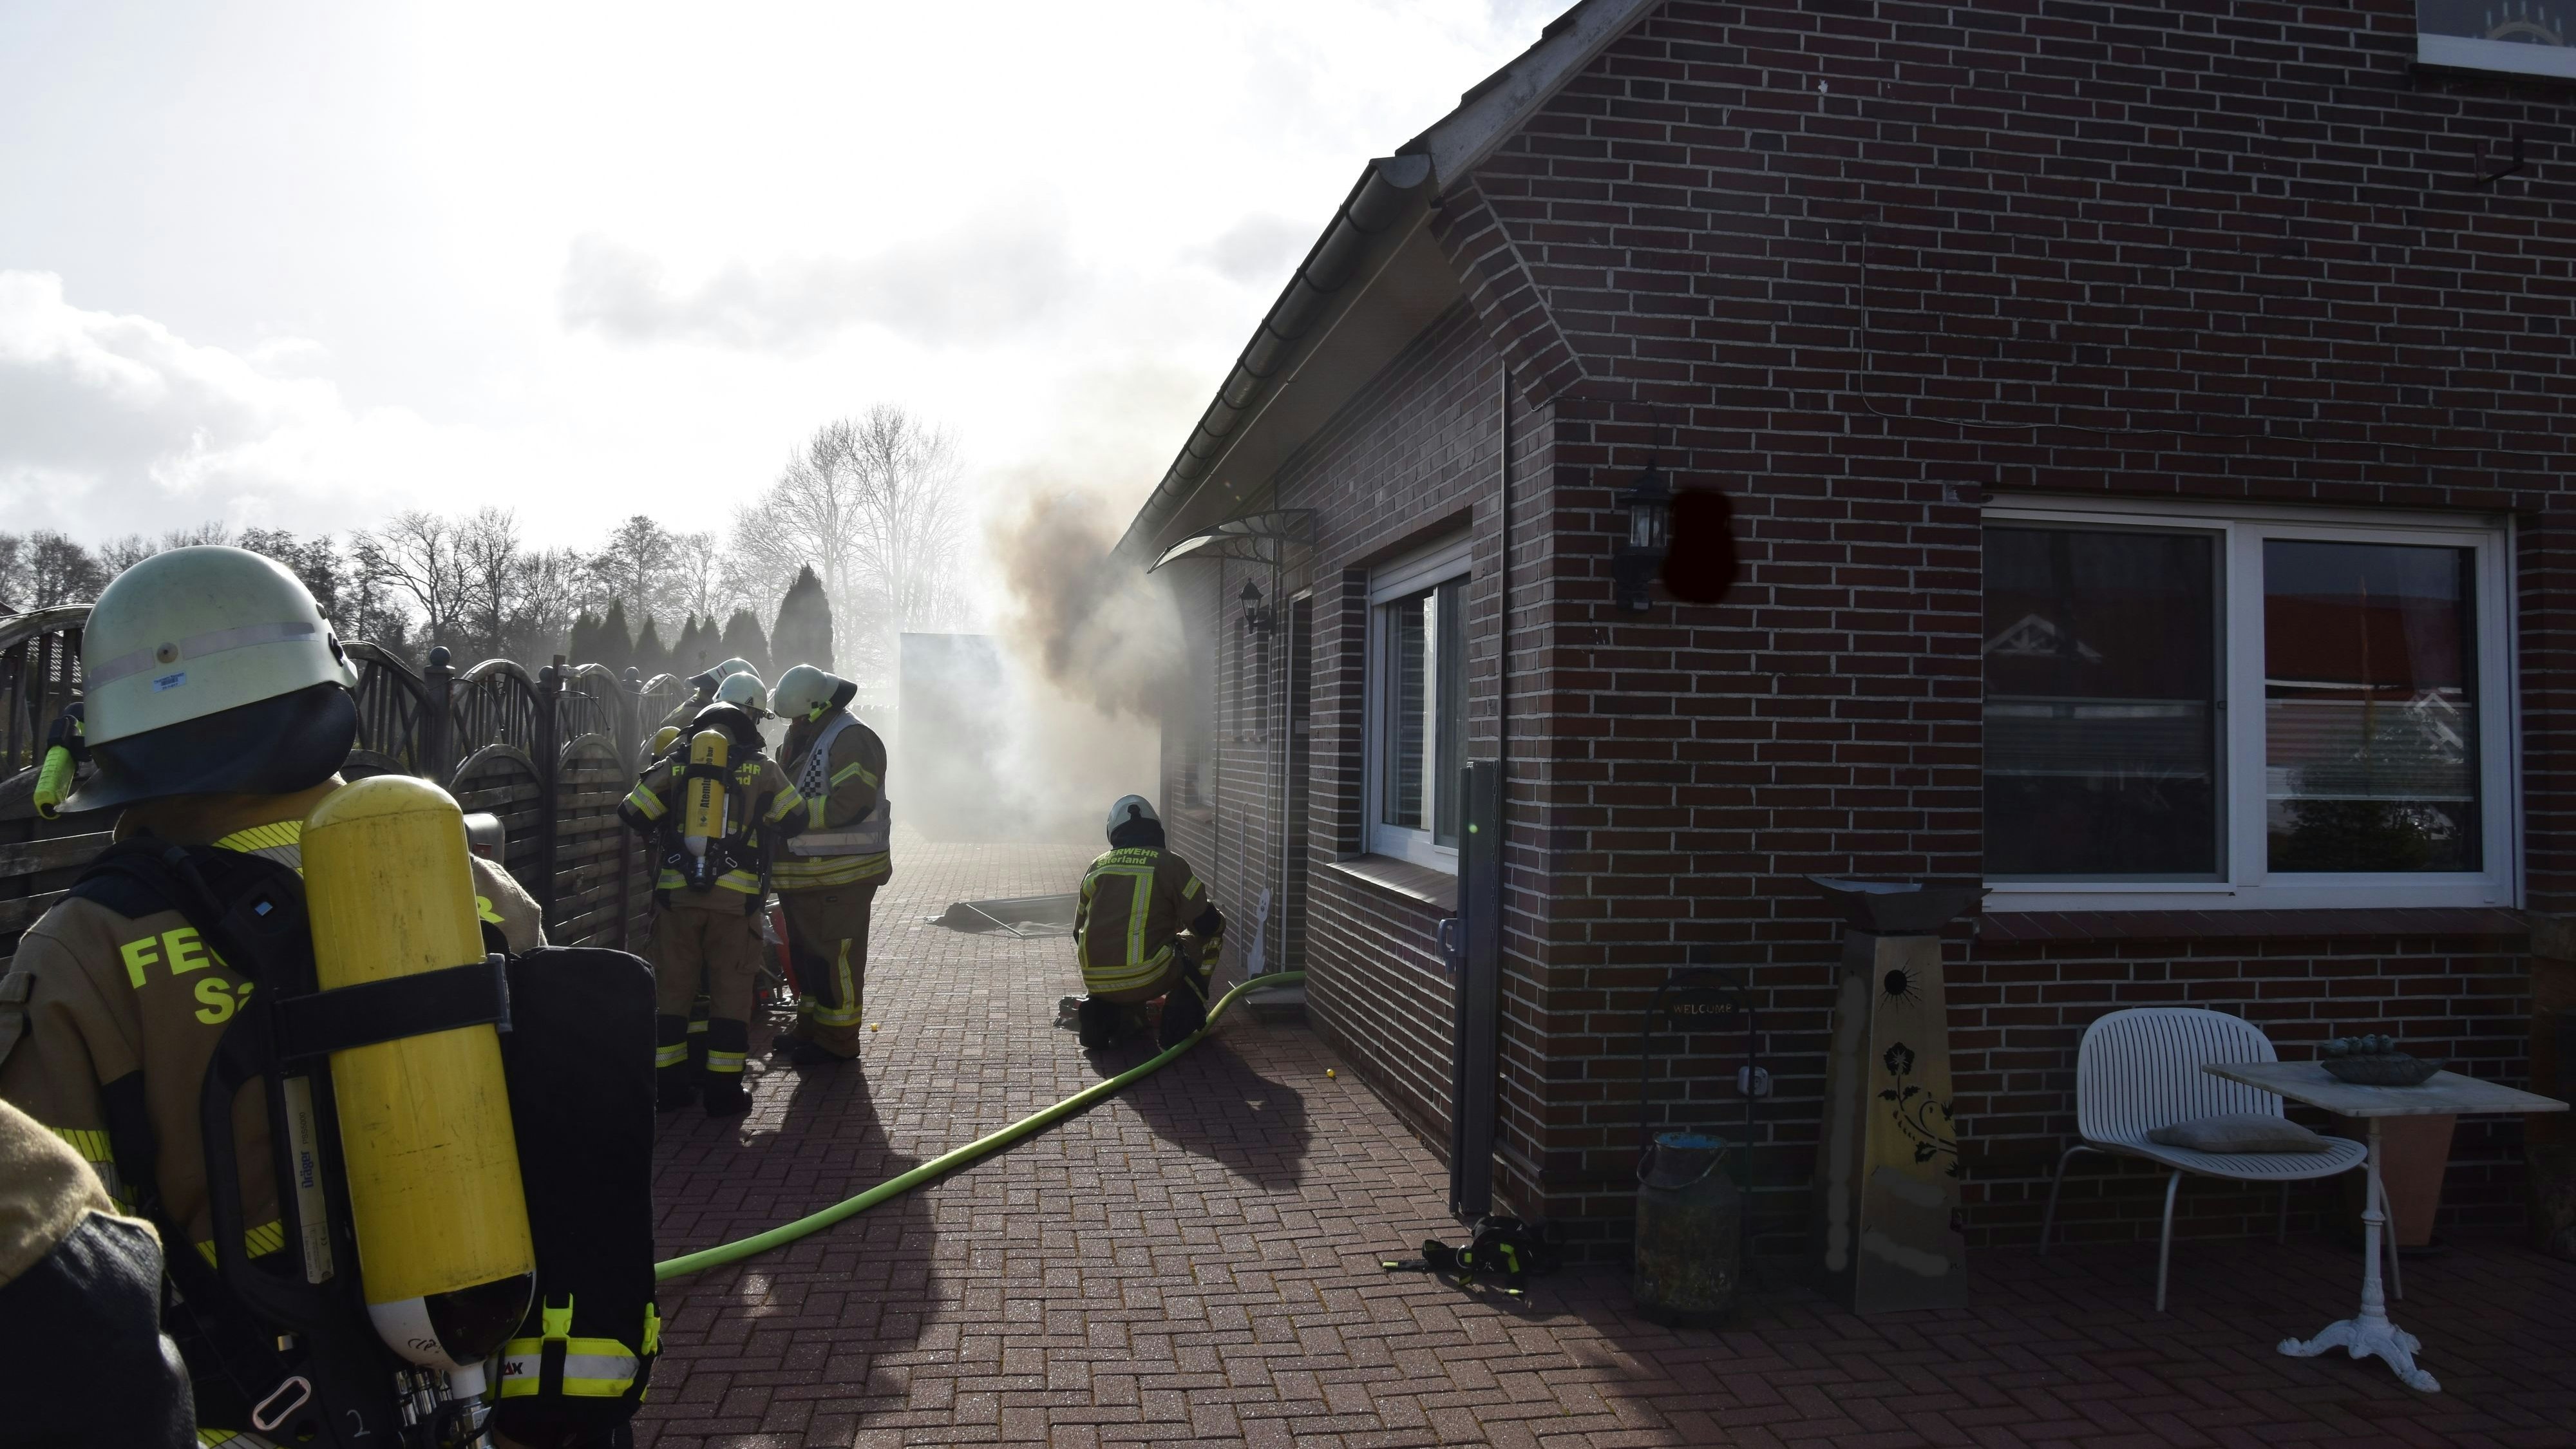 Foto: Feuerwehr Saterland / Thomas Giehl